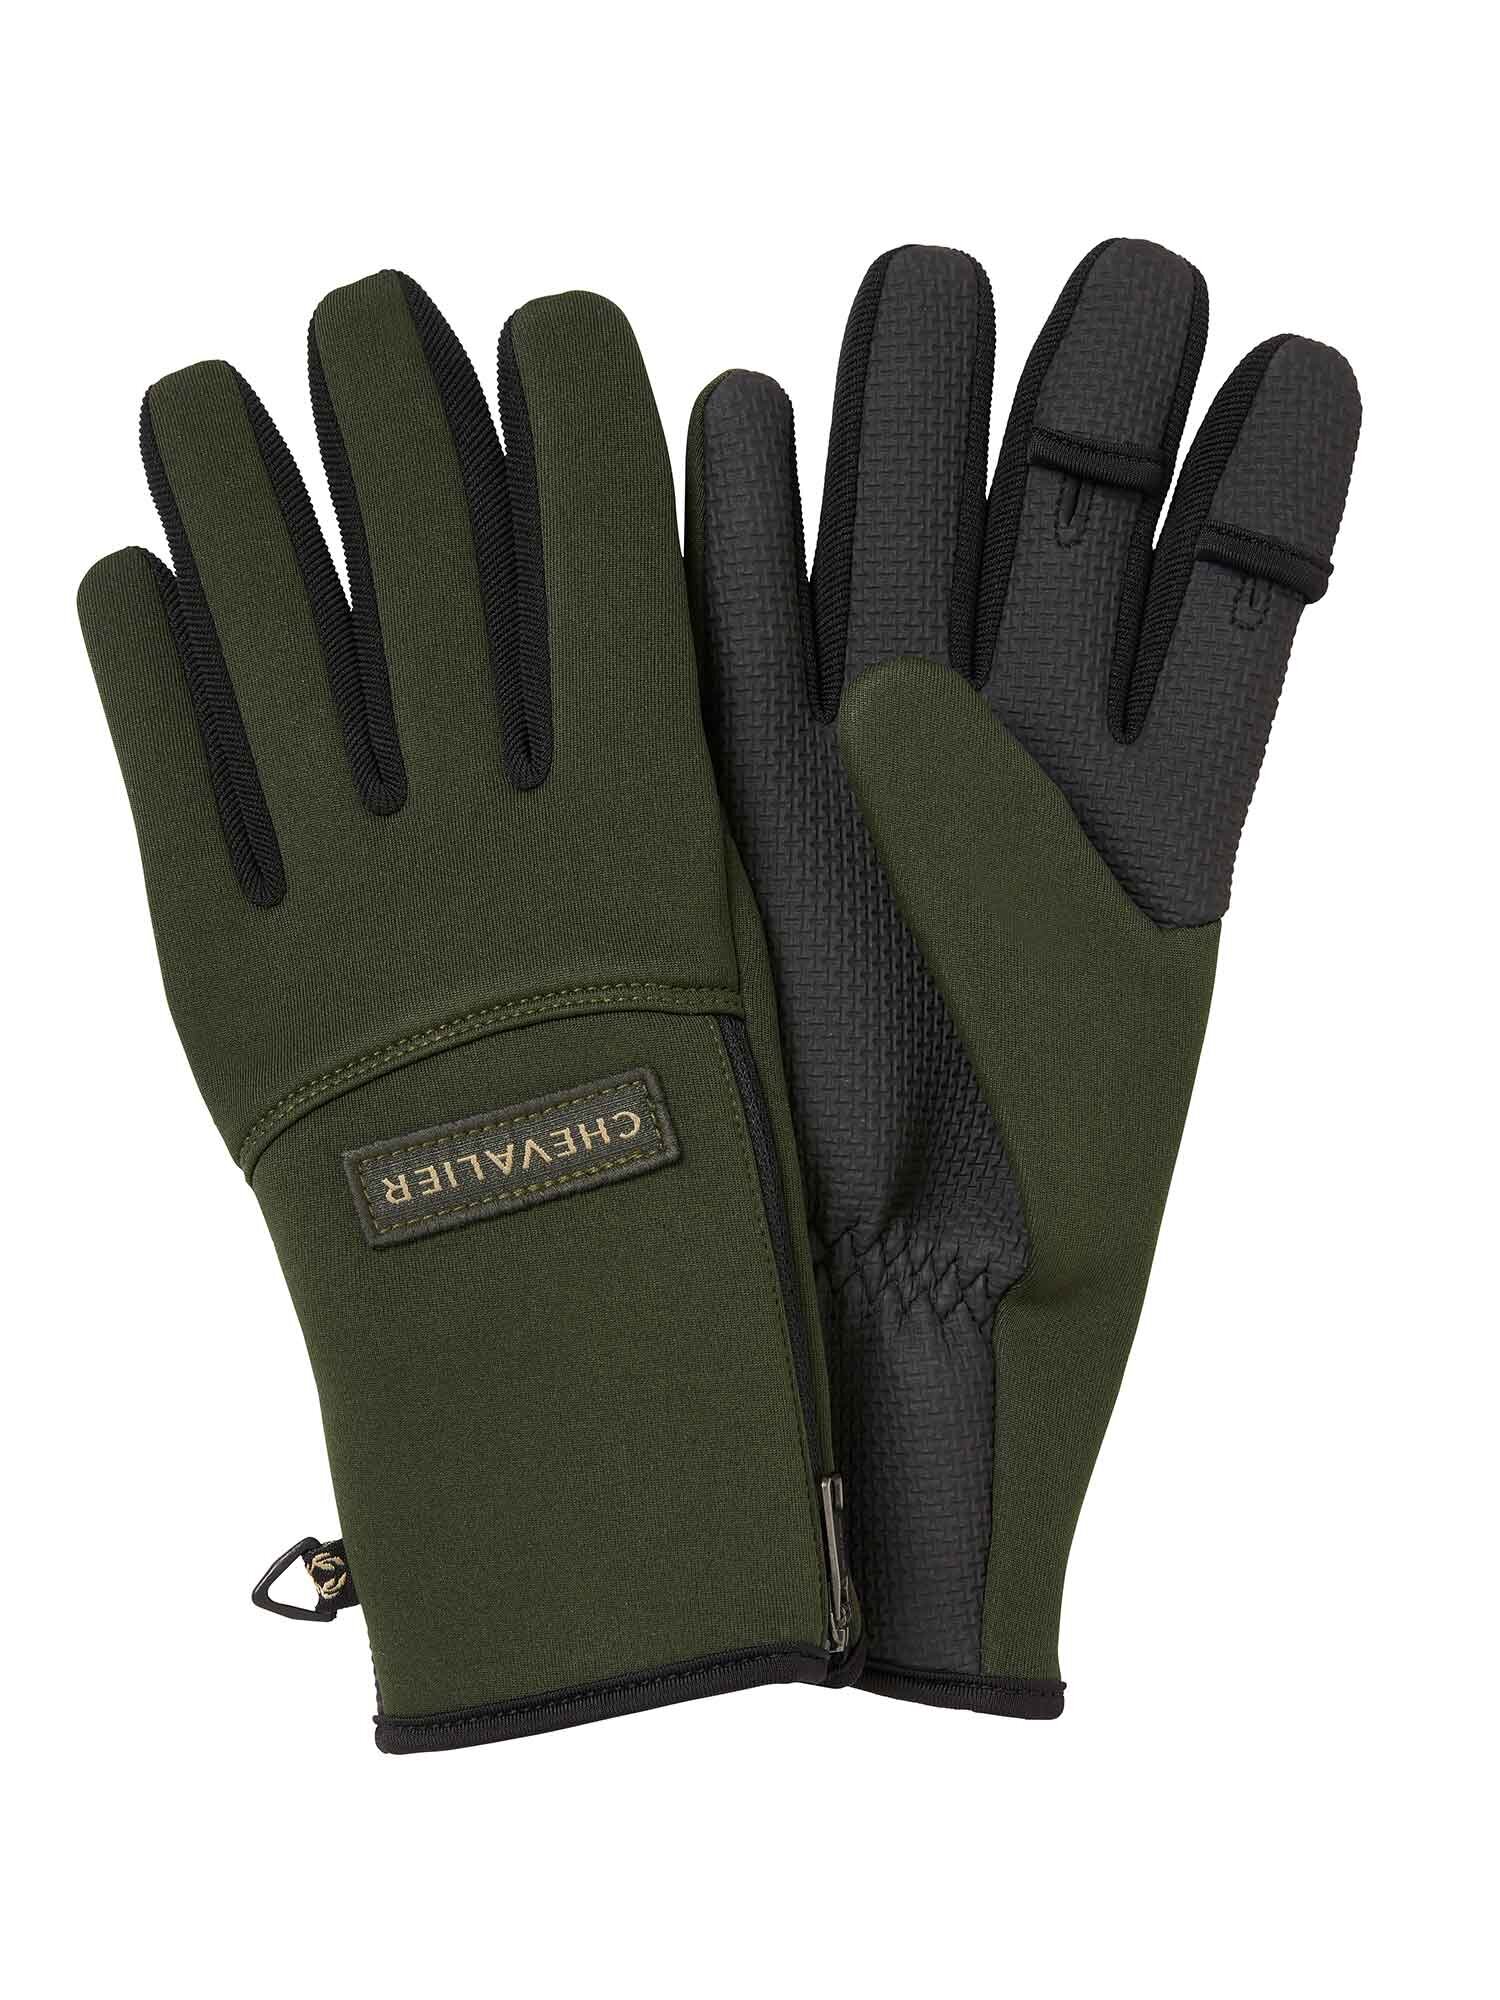 Scale Neoprene Gloves